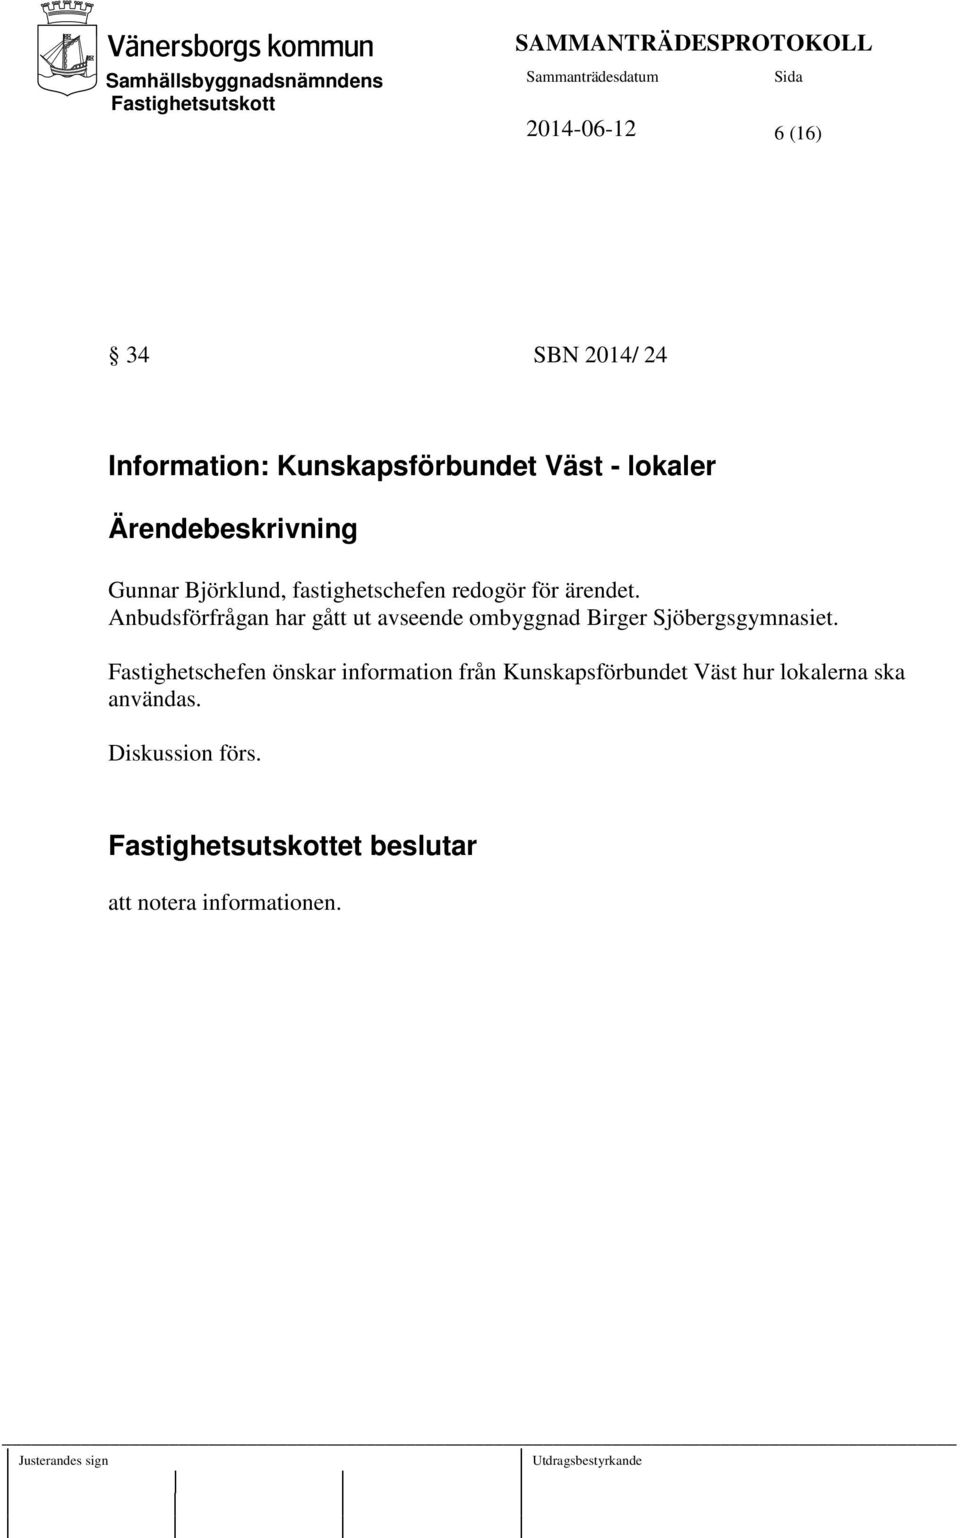 Anbudsförfrågan har gått ut avseende ombyggnad Birger Sjöbergsgymnasiet.